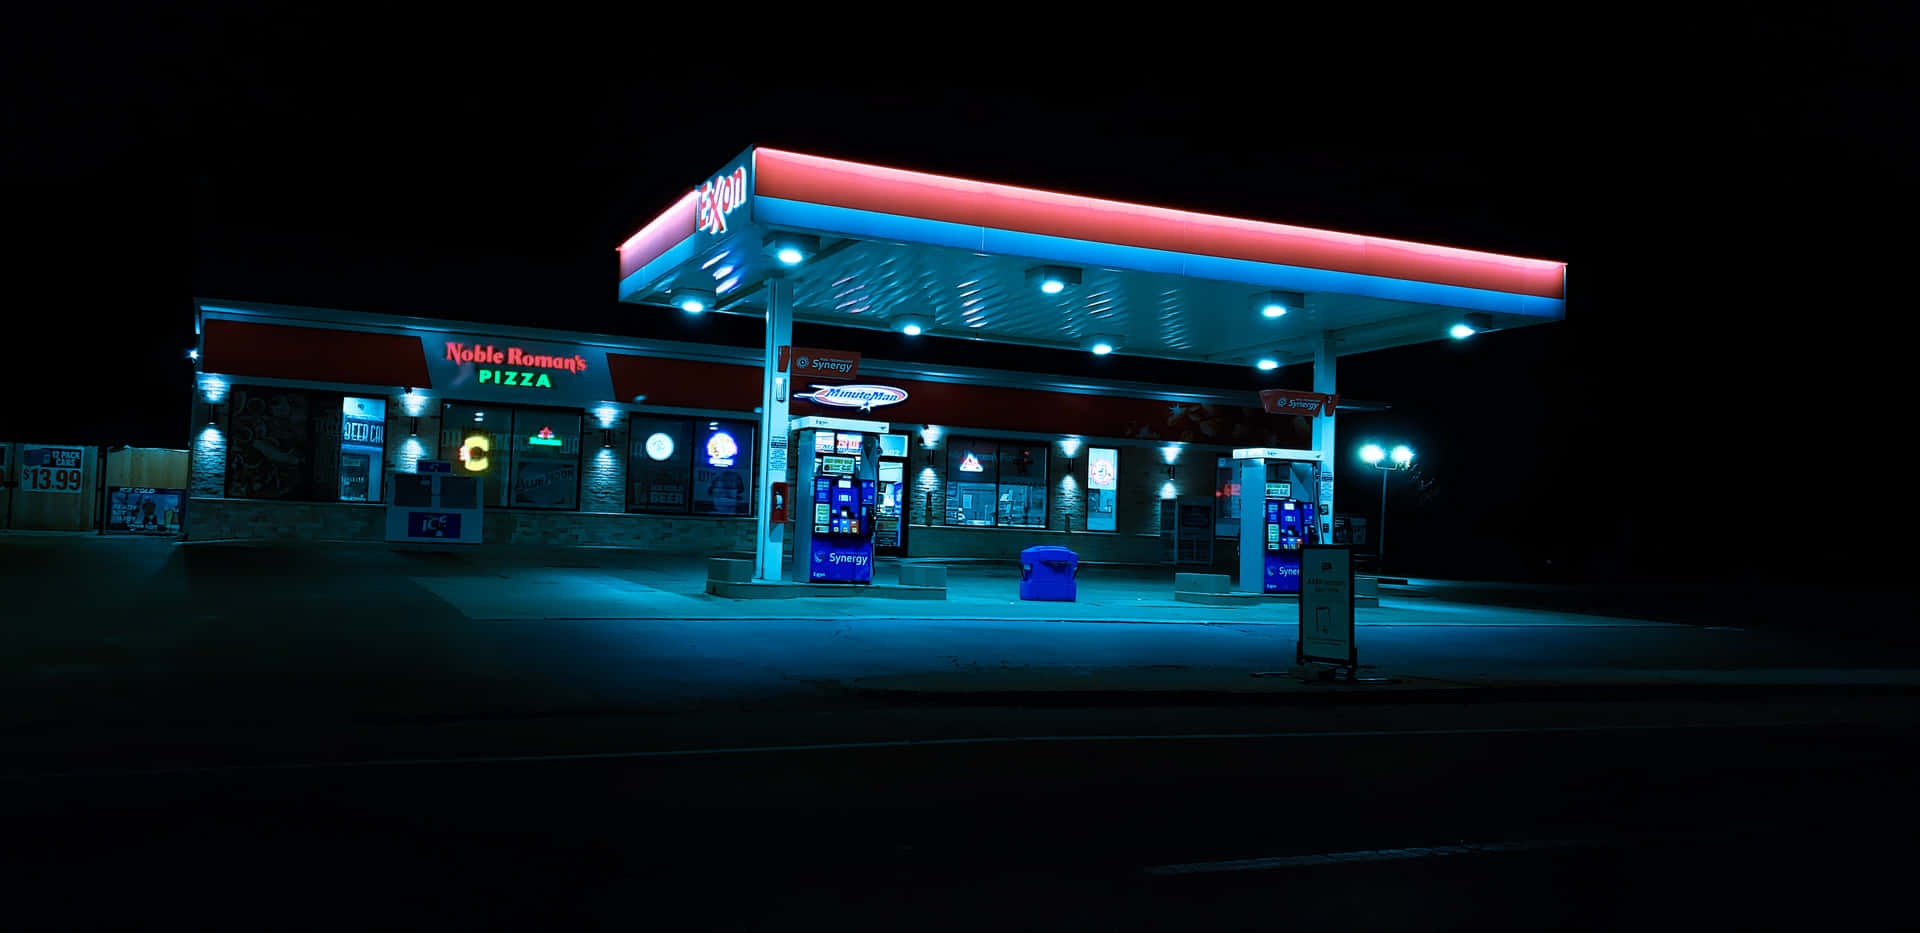 Umposto De Gasolina À Noite